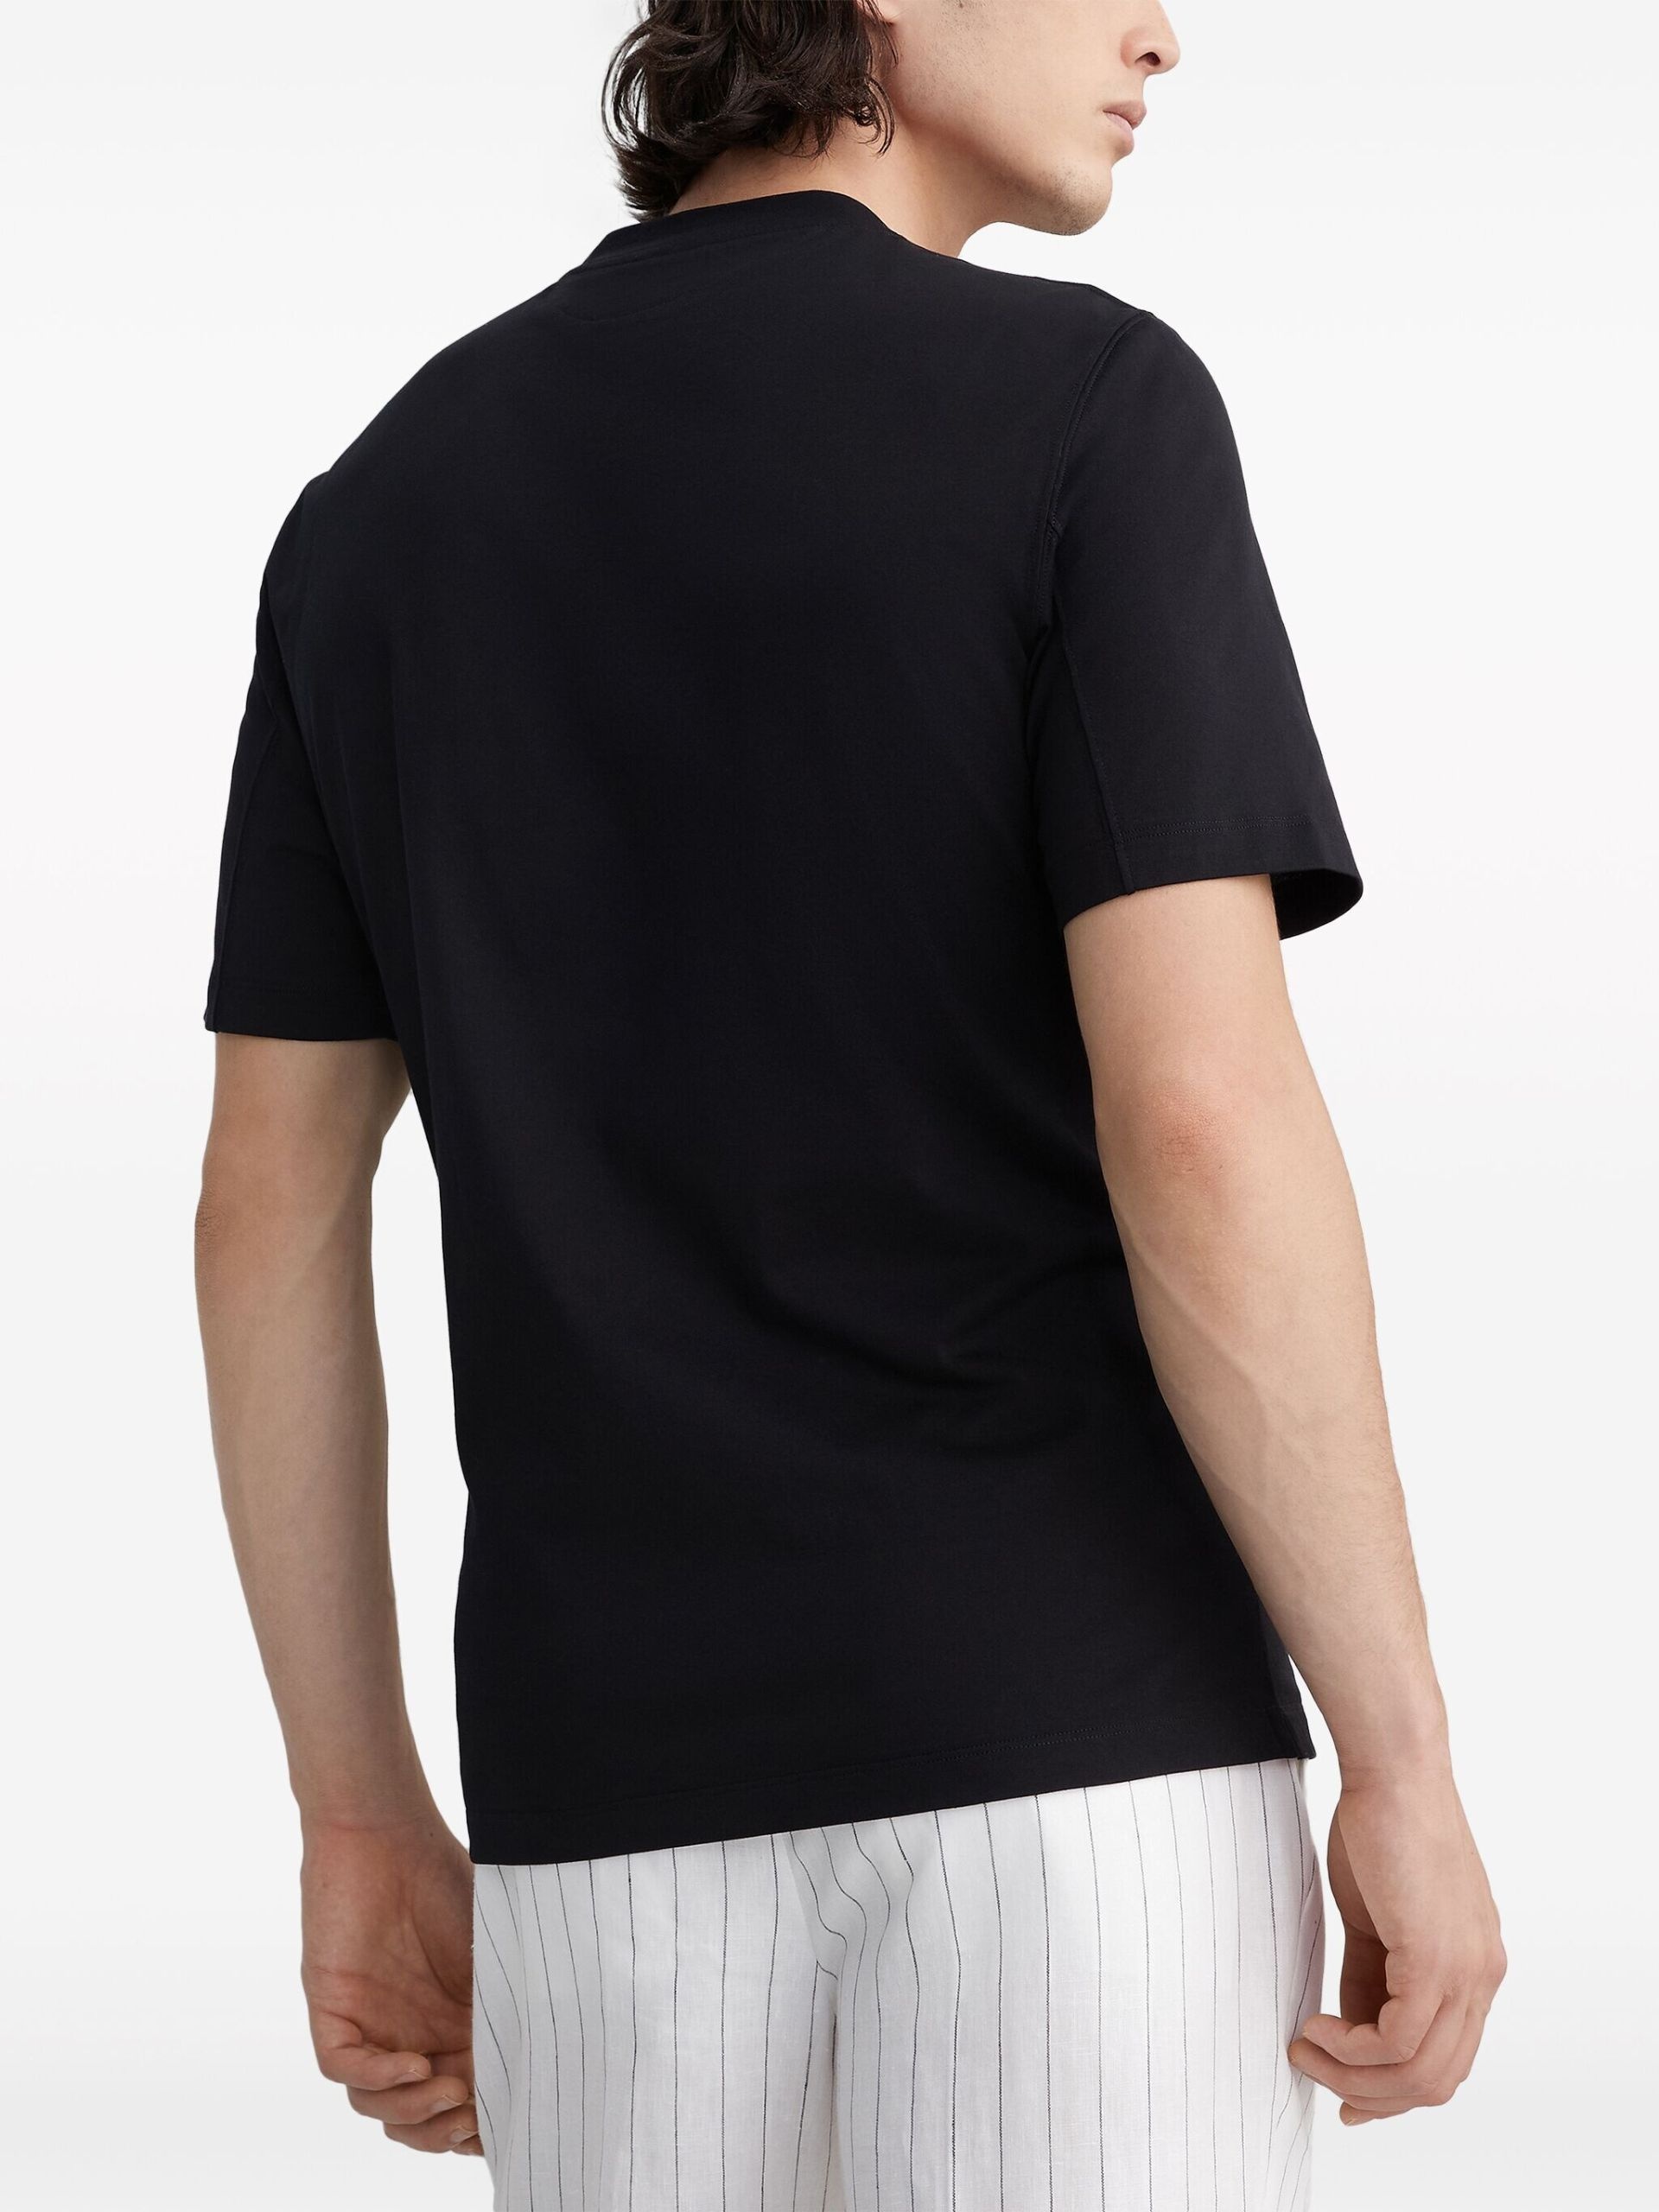 Black Crew-Neck Cotton T-Shirt - 4